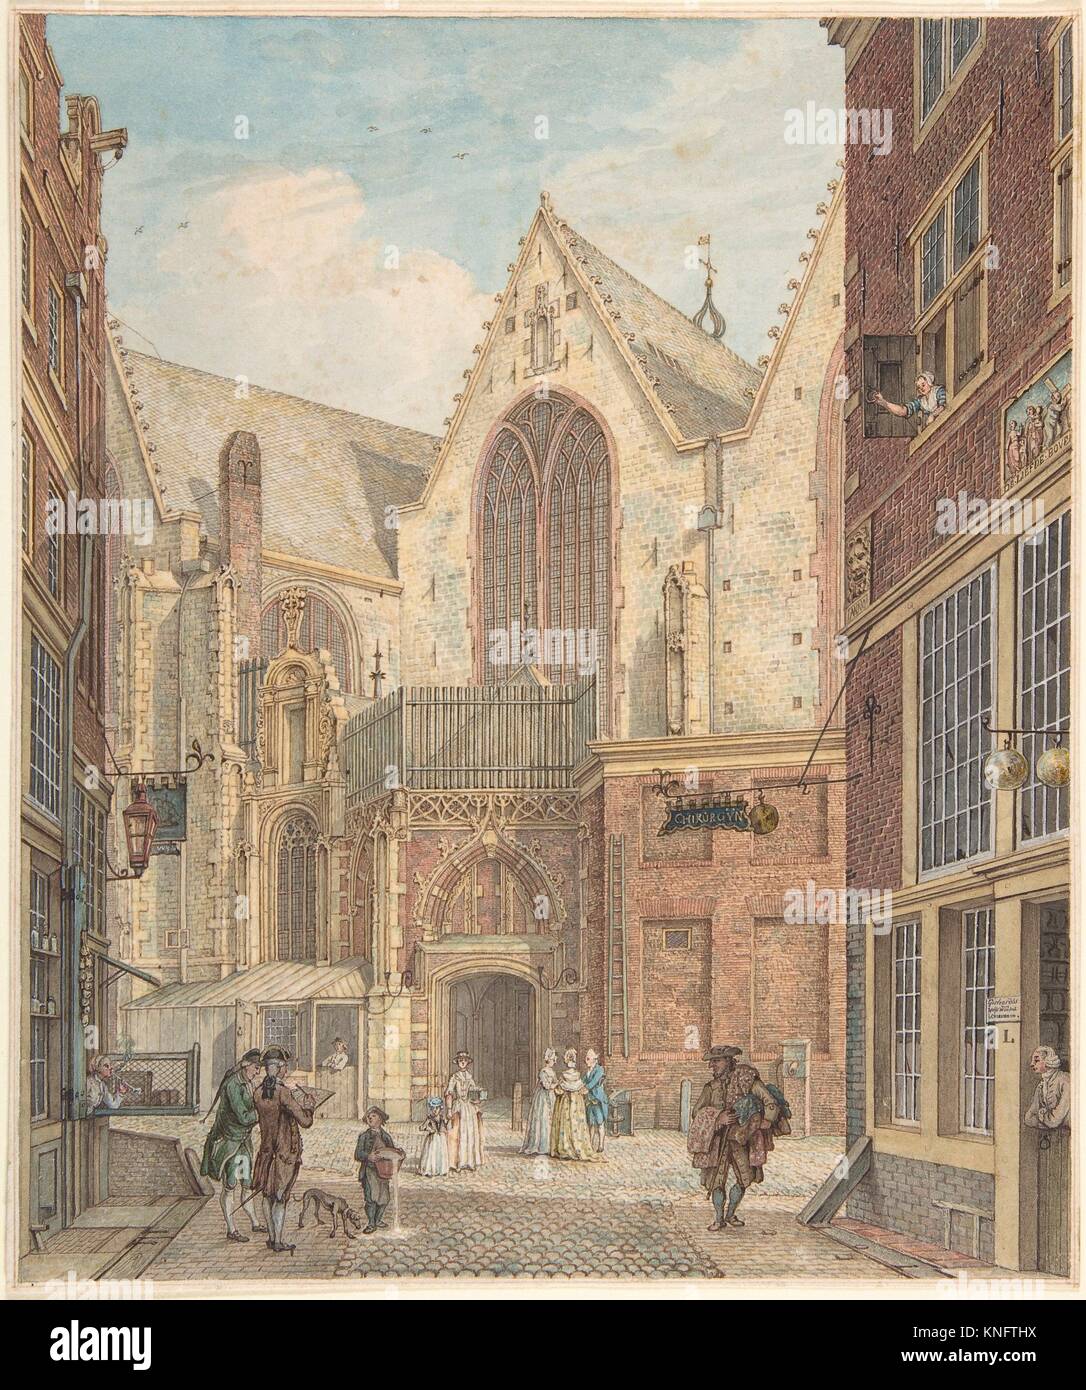 Vista de la Iglesia vieja de Amsterdam. Artista: Hermanus Petrus Schouten (holandés, 1747-1822); Fecha: n.d; Media: lápiz y tinta marrón y acuarela. Foto de stock